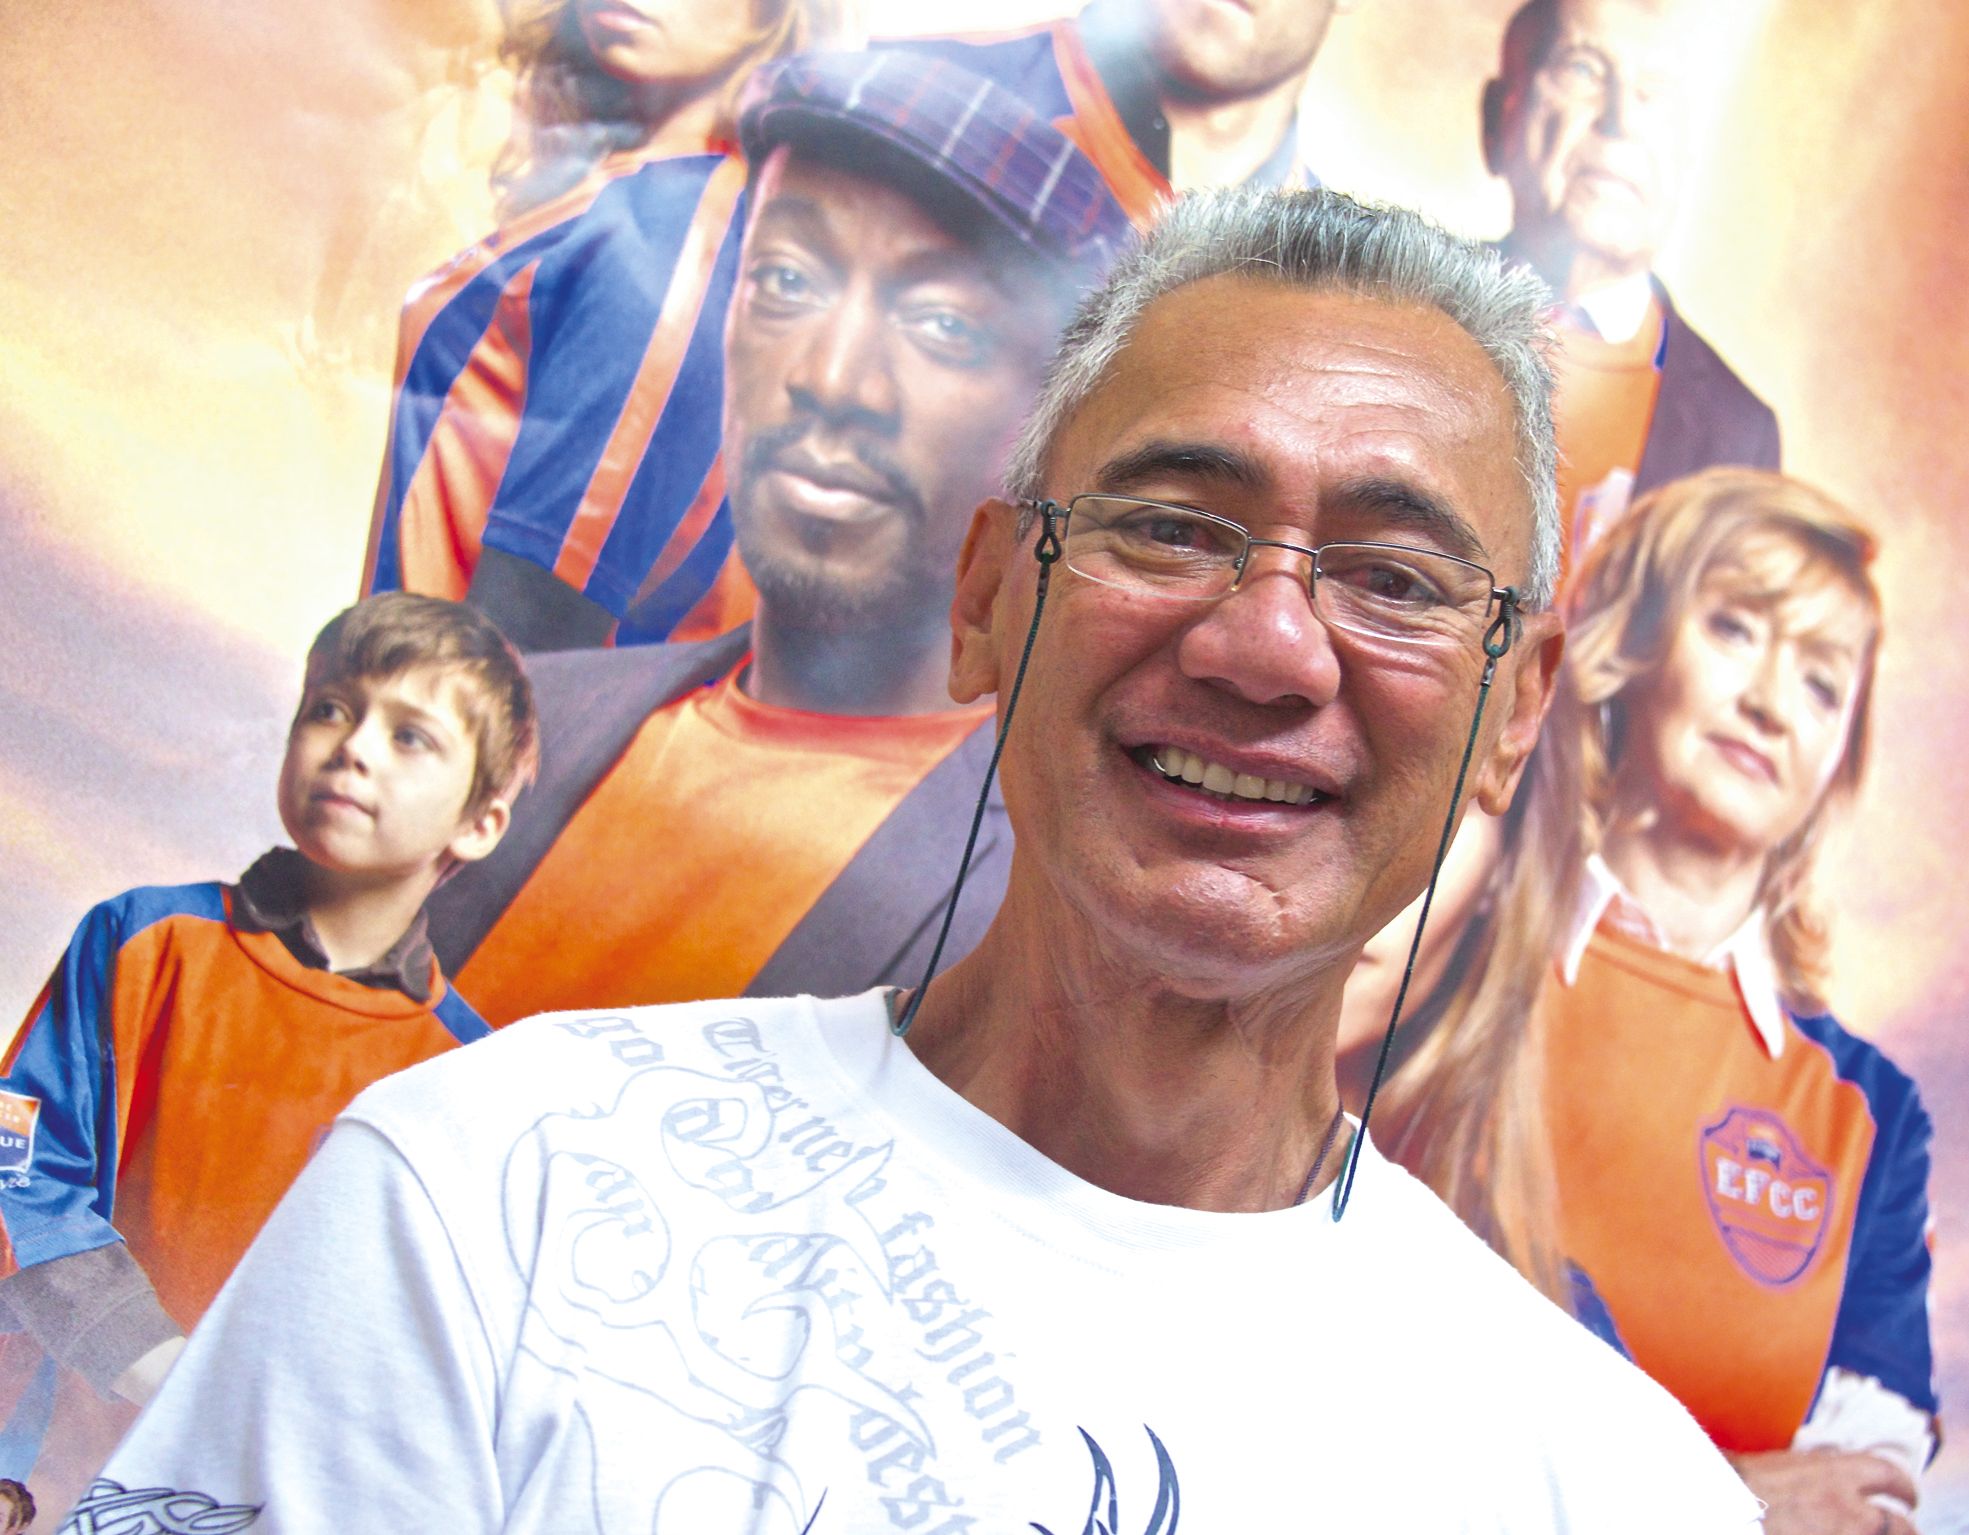 Félix posait hier matin, vendredi 18 mars, dans la maison de la Ligue contre le cancer à Nouméa. Derrière lui, l'affiche  de l'équipe de France contre le cancer, une équipe qu'il a rejointe après avoir bénéficié de son soutien.